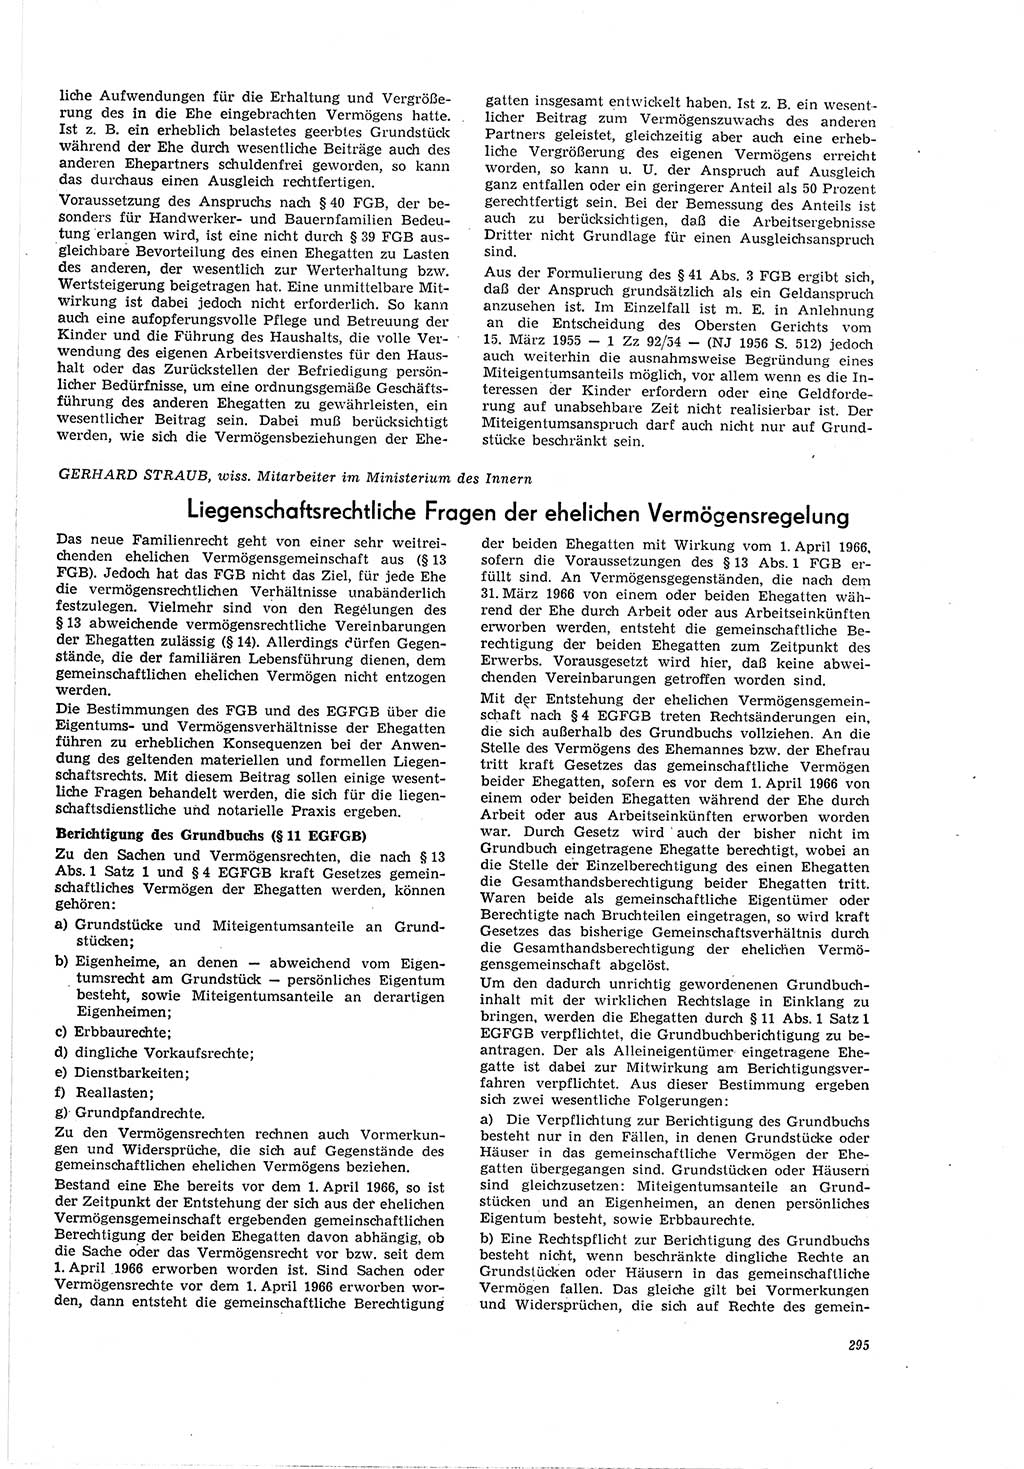 Neue Justiz (NJ), Zeitschrift für Recht und Rechtswissenschaft [Deutsche Demokratische Republik (DDR)], 20. Jahrgang 1966, Seite 295 (NJ DDR 1966, S. 295)